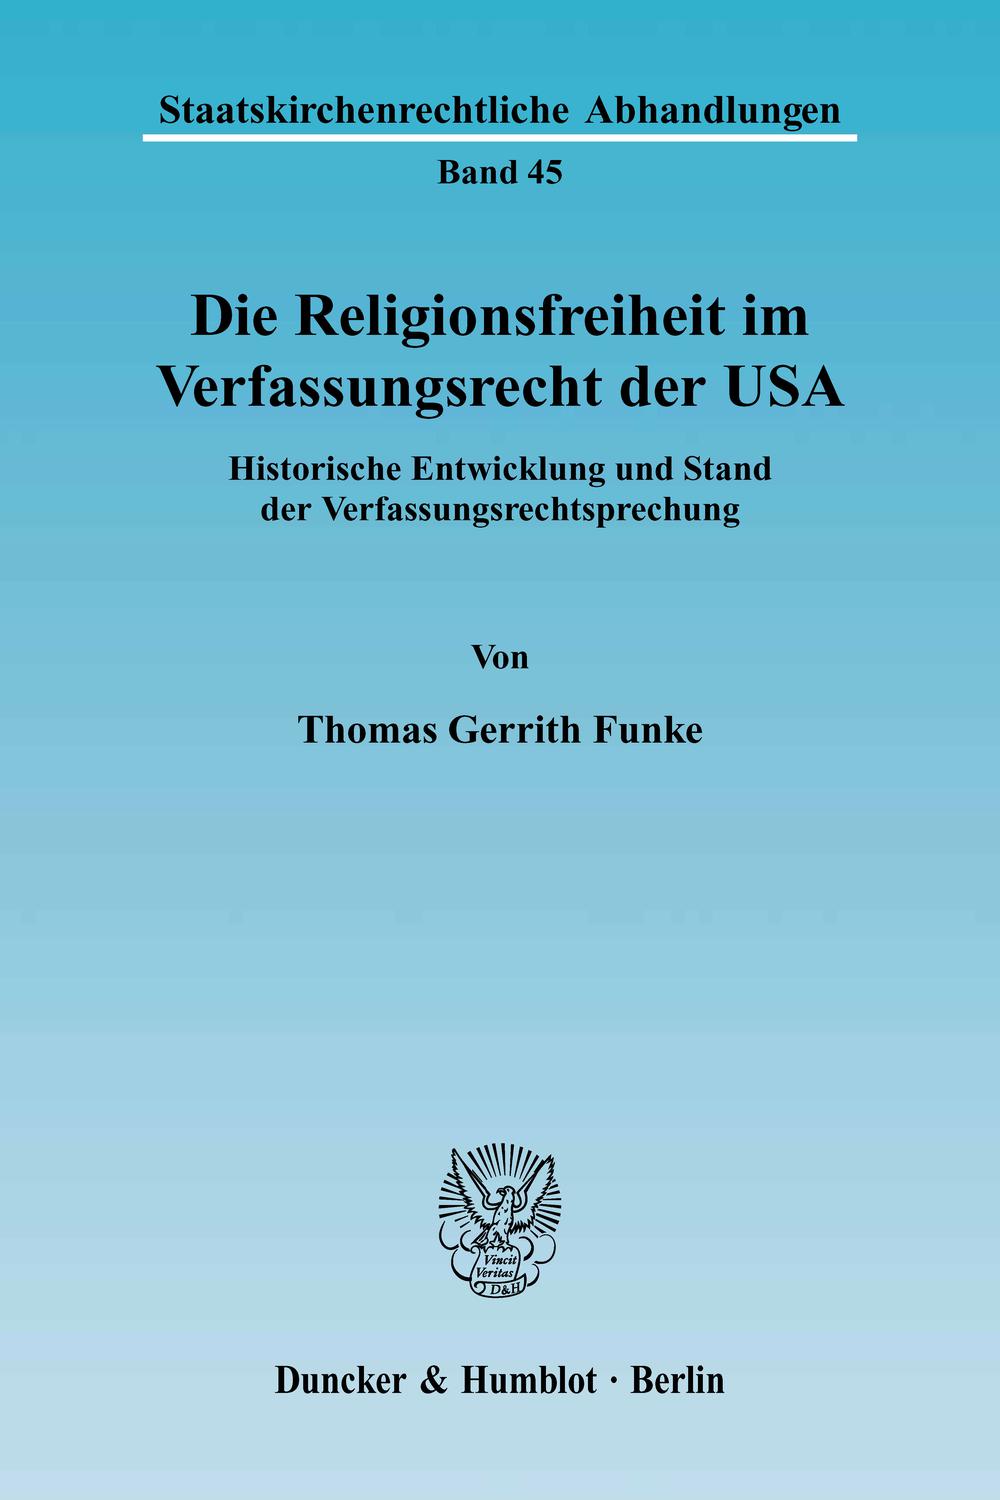 Die Religionsfreiheit im Verfassungsrecht der USA. - Thomas Gerrith Funke